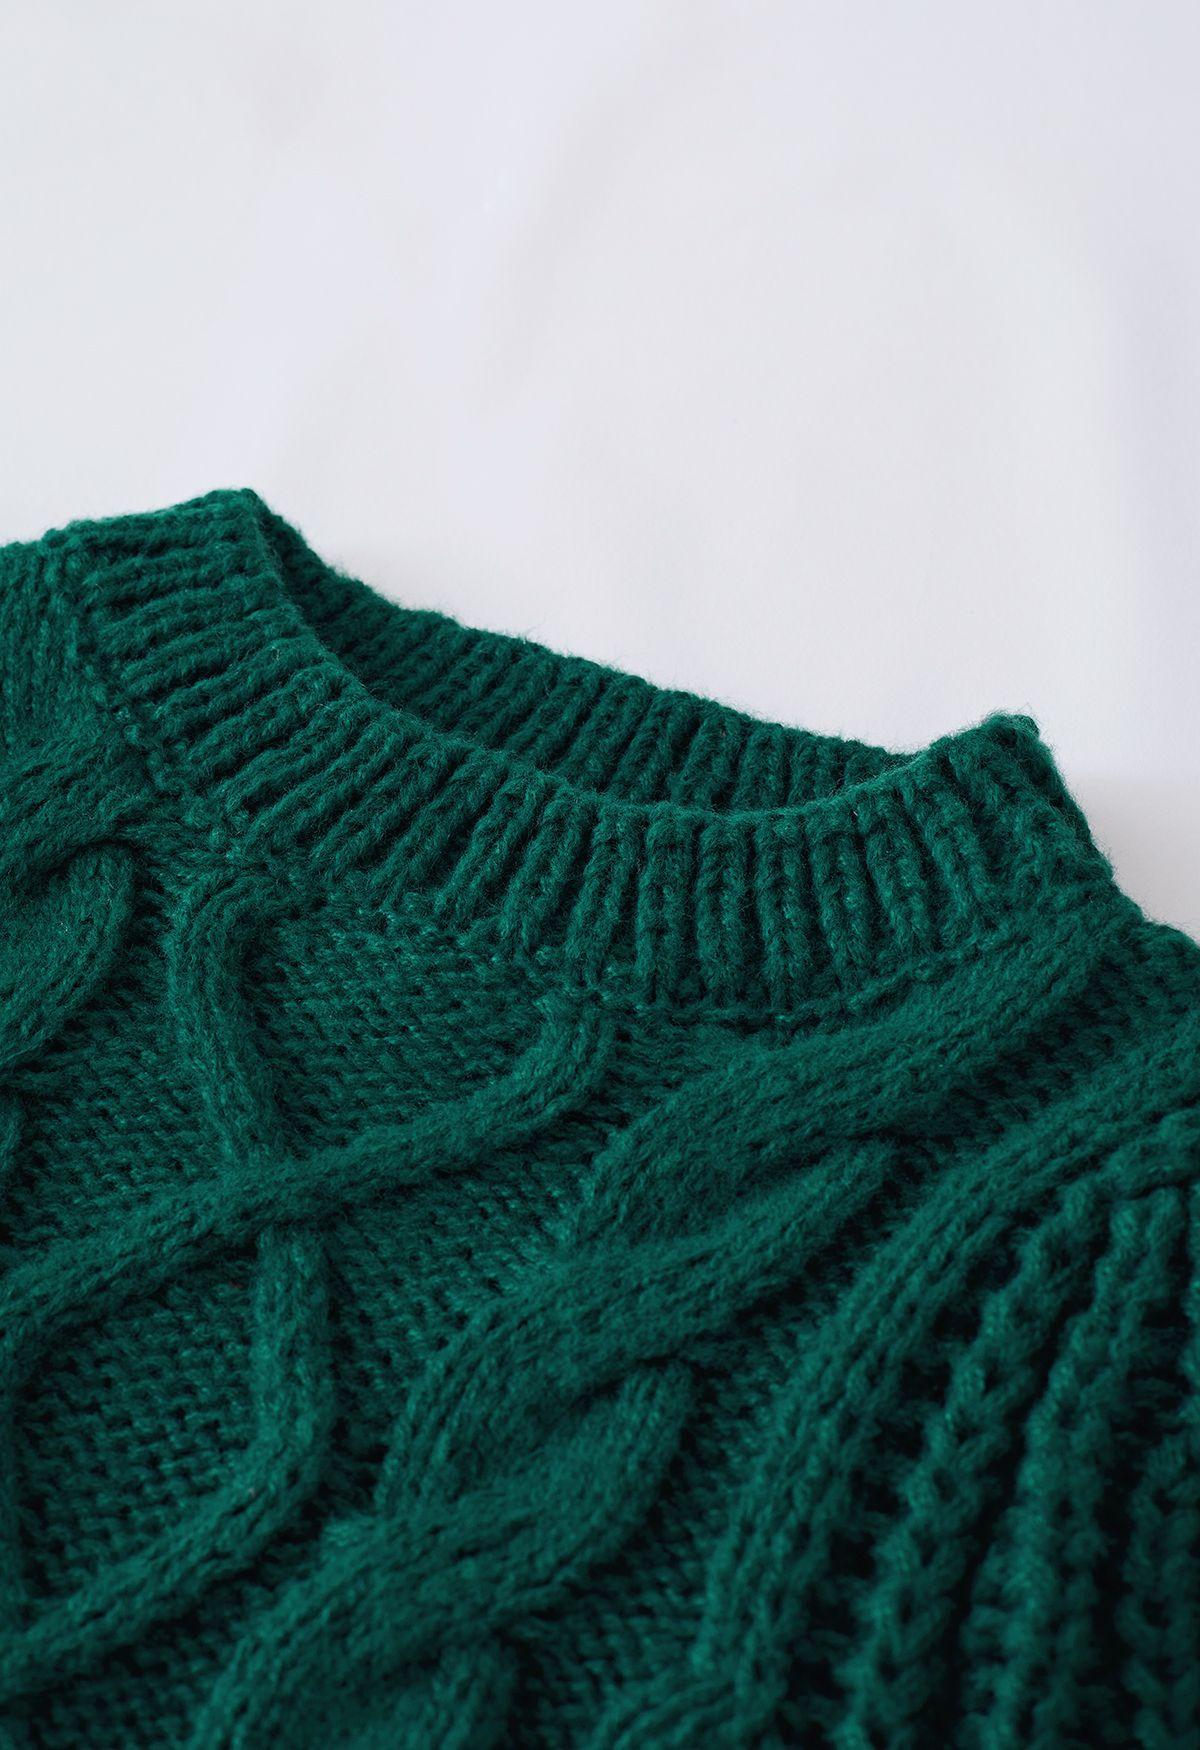 Suéter com nervuras trançado manga bolha em verde escuro